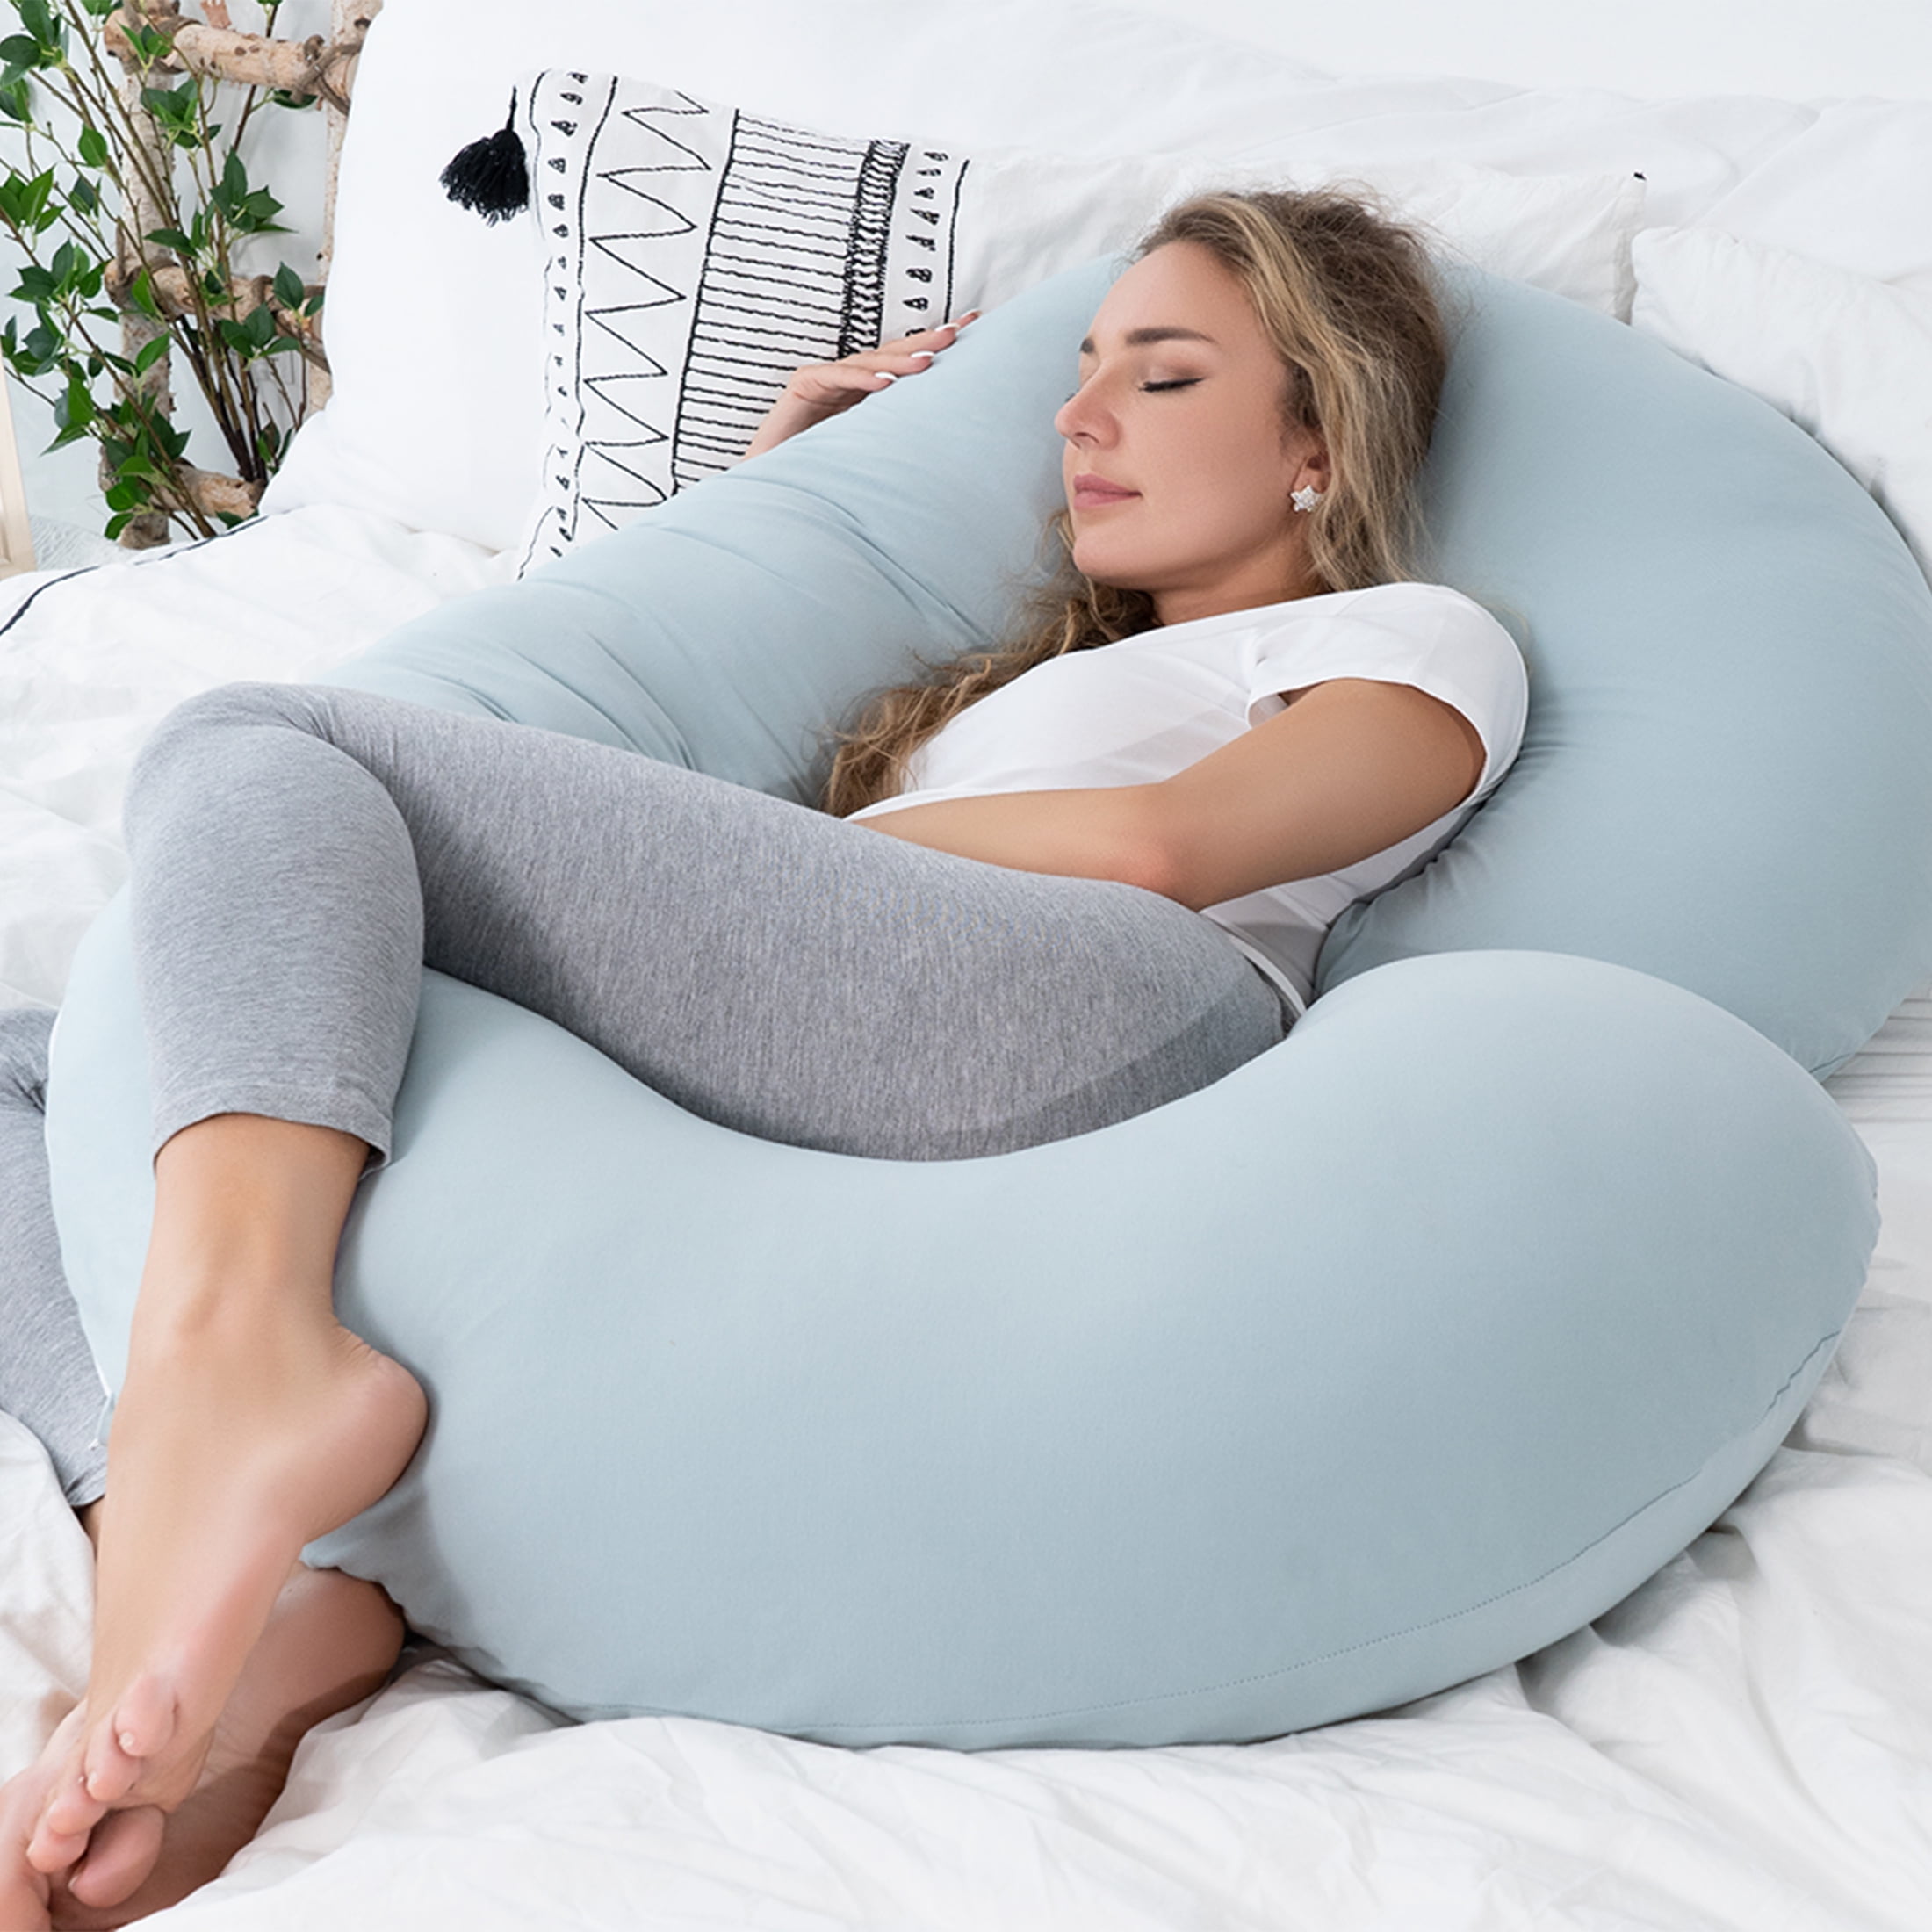 QUEEN ROSE Pregnancy Pillow, Maternity Pillow for Pregnant Women, 55 Inch U  Shaped Full Body Pillow for Sleeping Support, Reversible Minky Dot Velvet